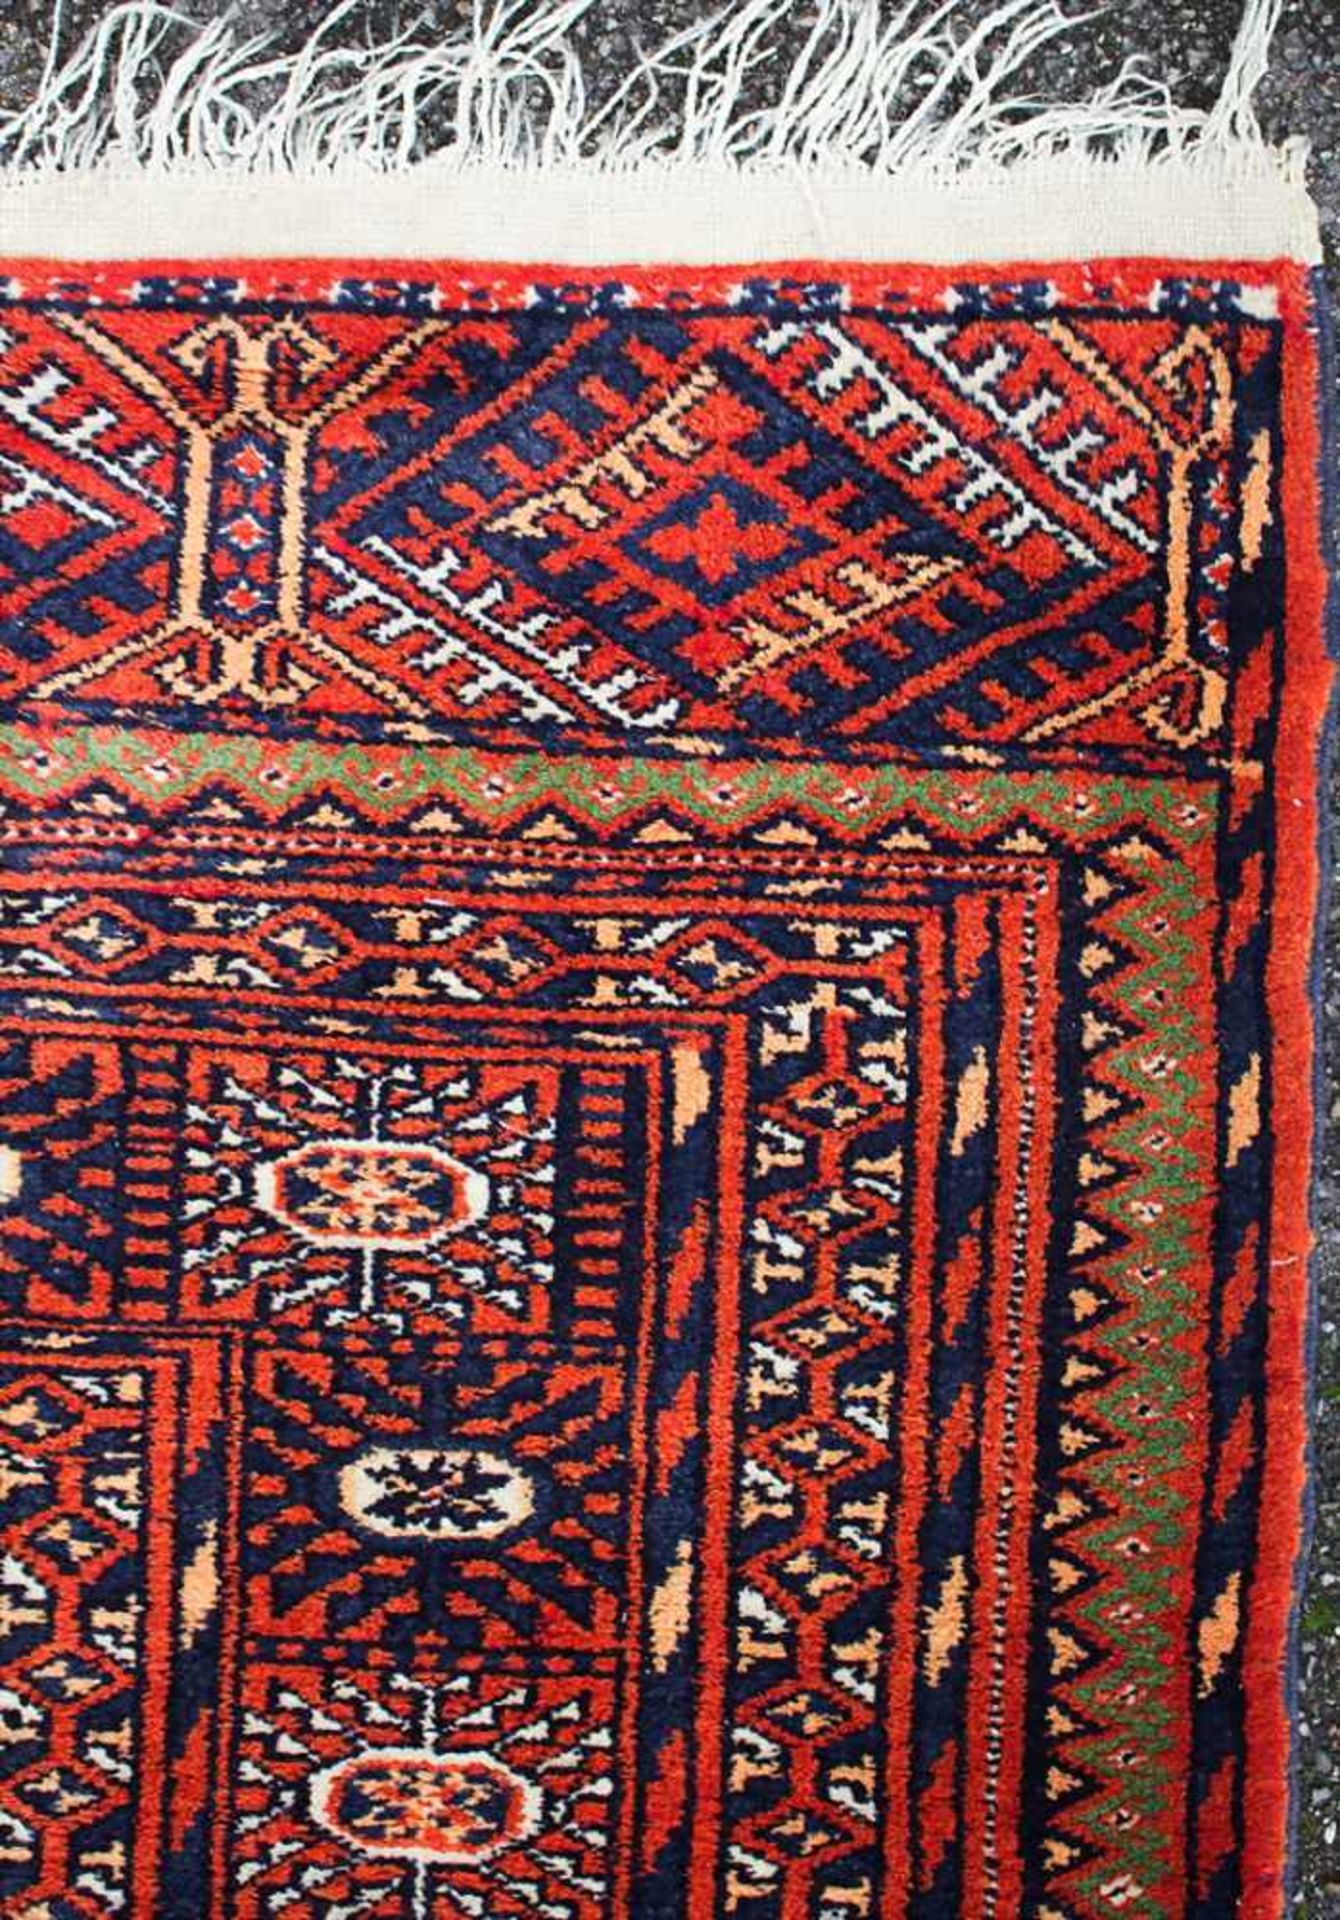 Orientteppich / An oriental carpetMaterial: Wolle auf Baumwolle, Maße: 256 x 160 cm, Zustand: - Image 4 of 5